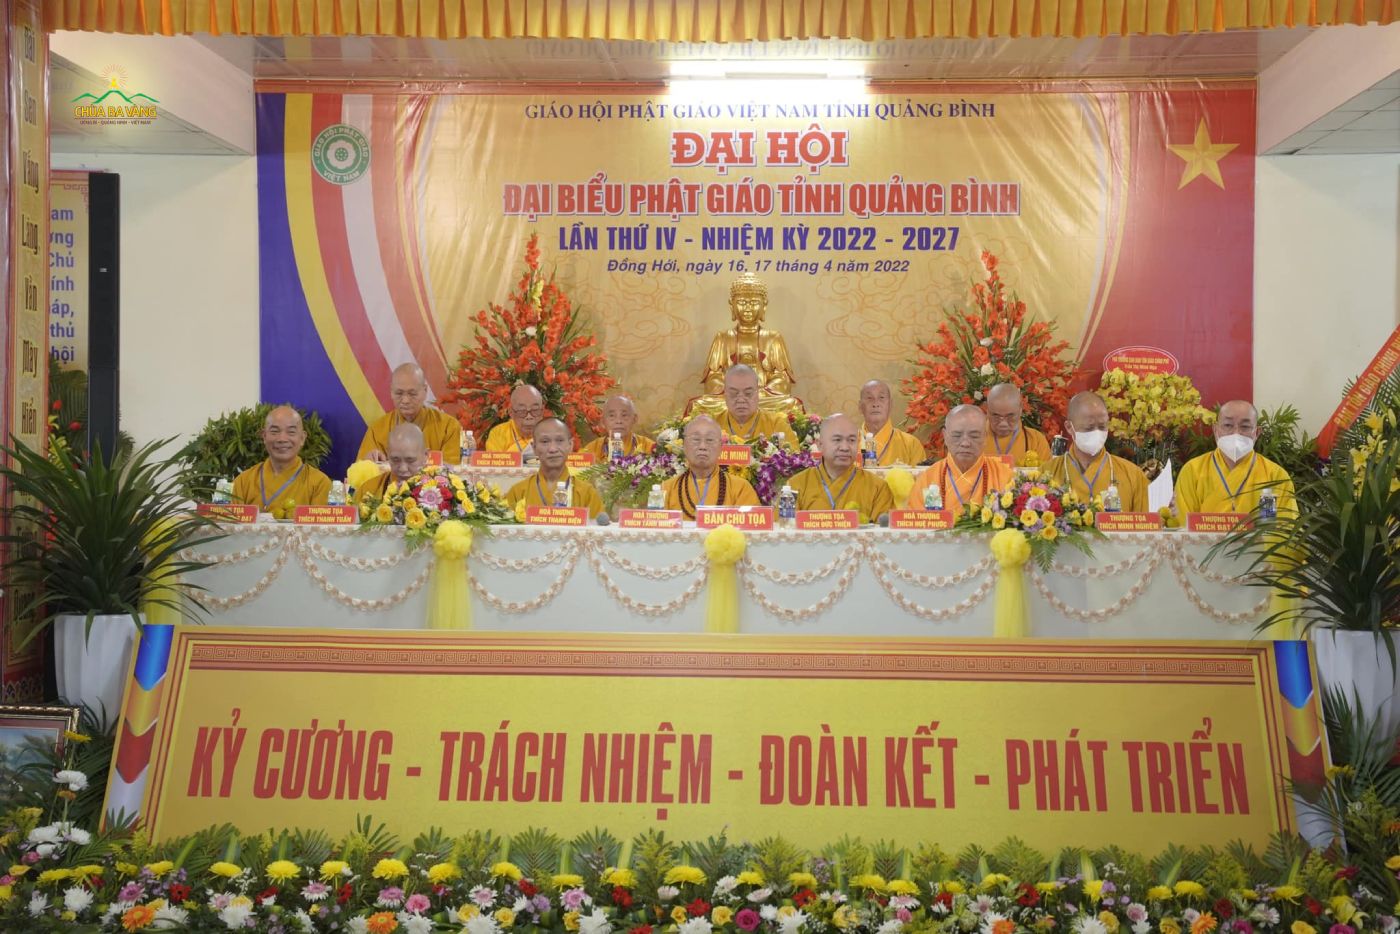 Chư Tôn đức Tăng trong Đại hội Đại biểu Phật giáo tỉnh Quảng Bình lần thứ IV (nhiệm kỳ 2022-2027)